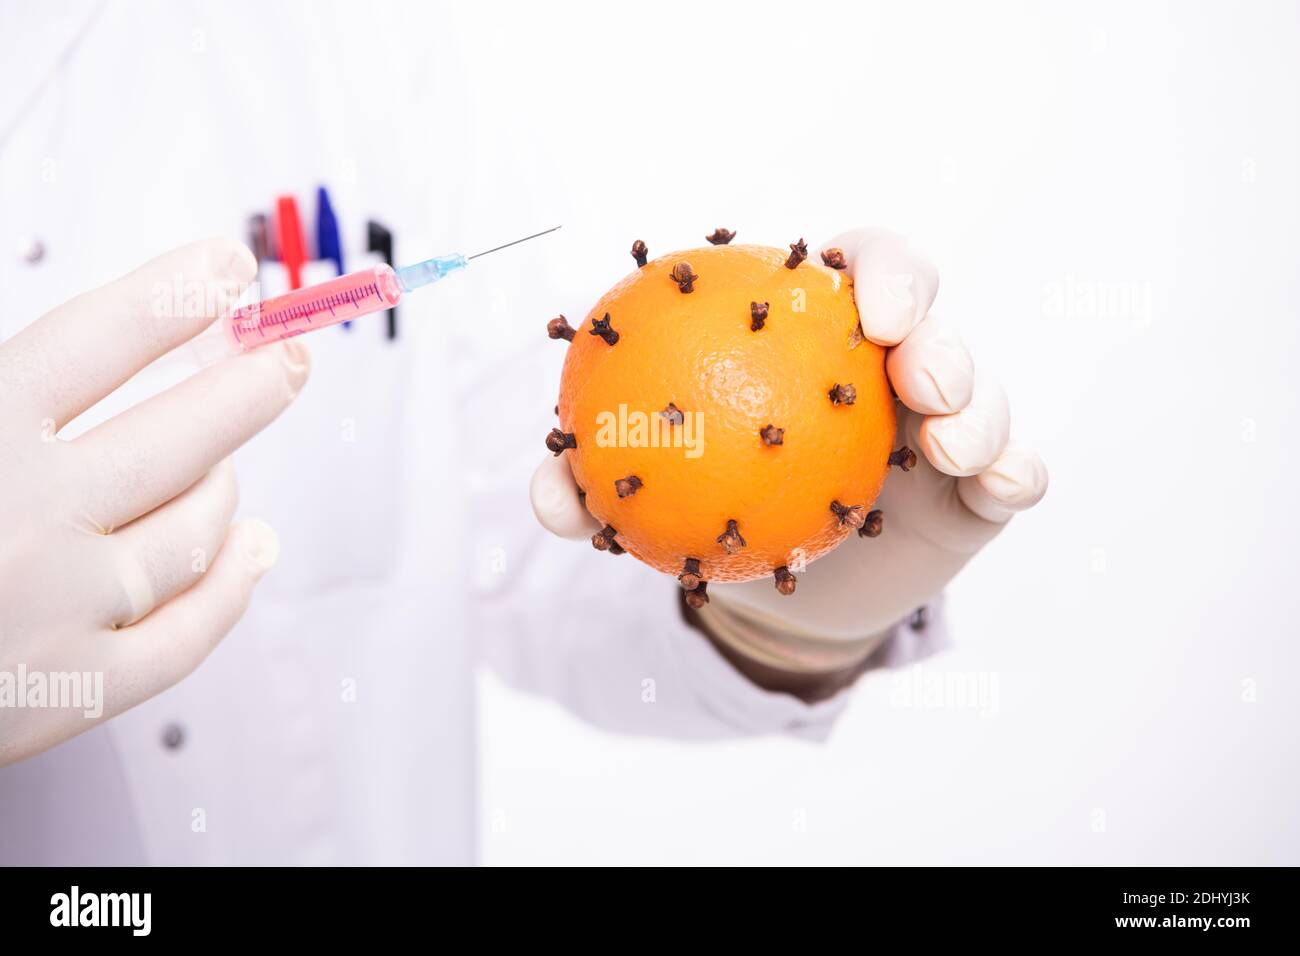 Mani del medico, guanti di vit coperti, tenendo una vaccinazione (siringa) e una paricola del virus, che è un arancione con chiodi di garofano Foto Stock